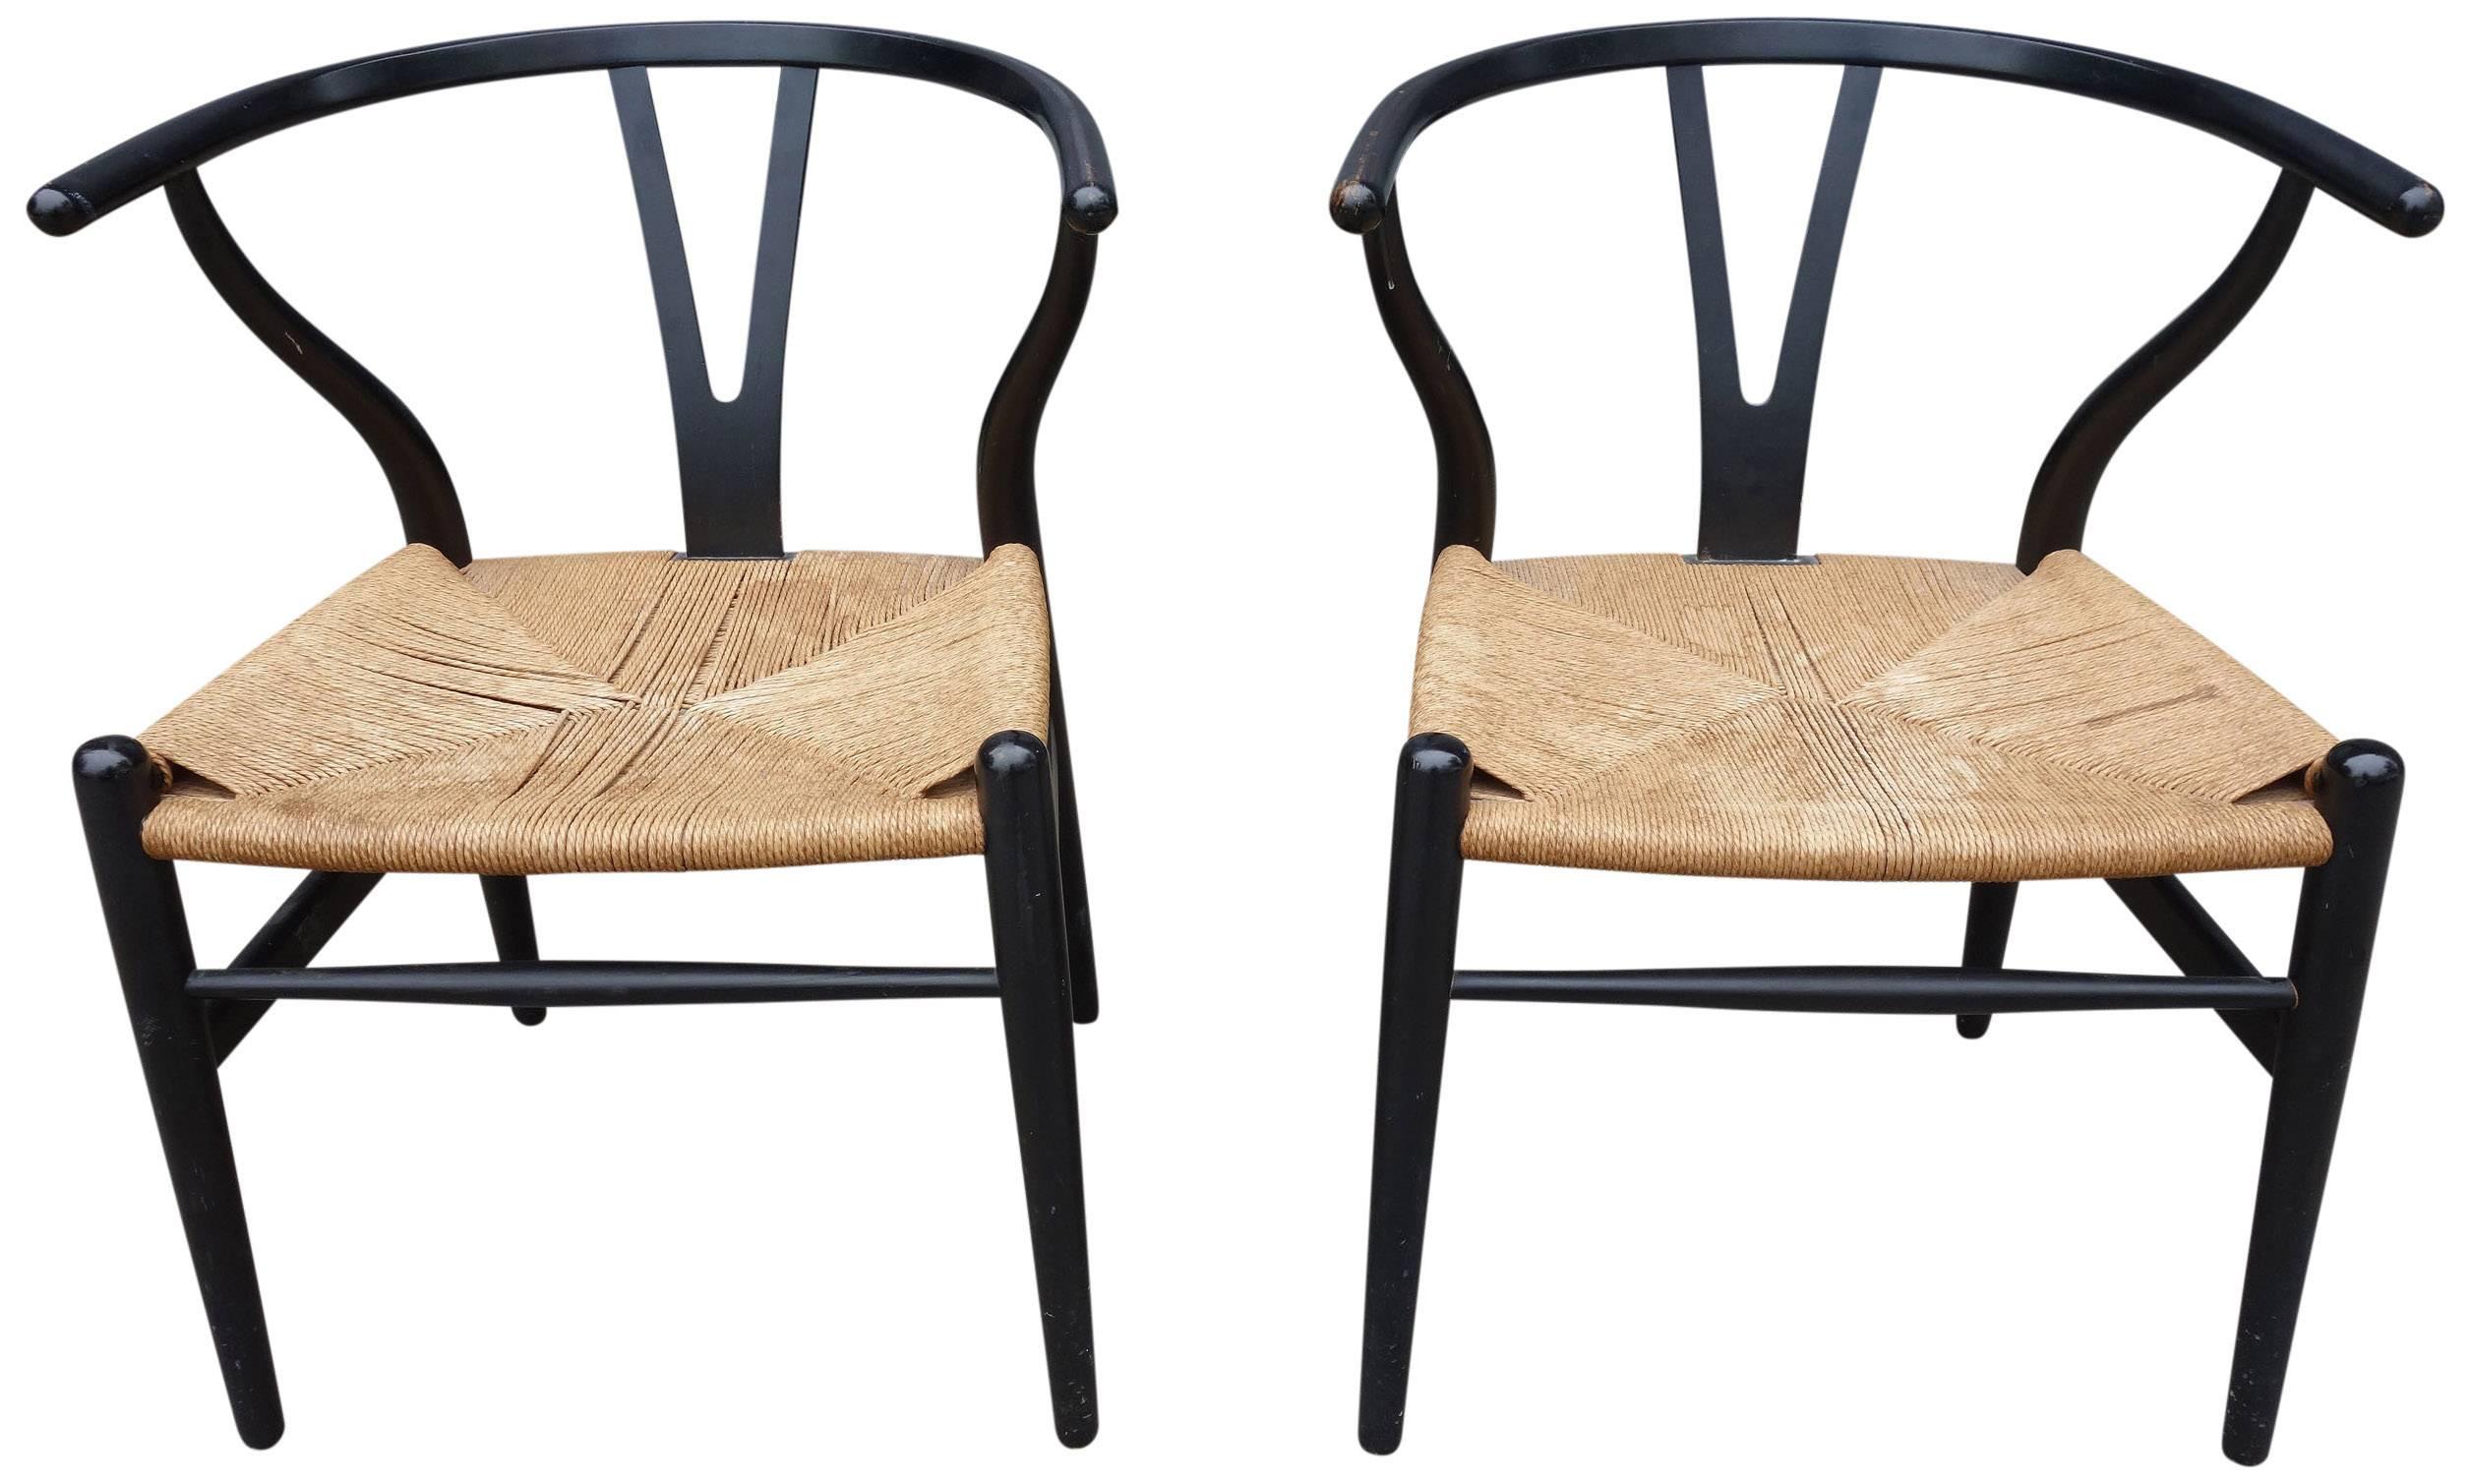 20th Century Midcentury Hans Wegner Wishbone Chairs